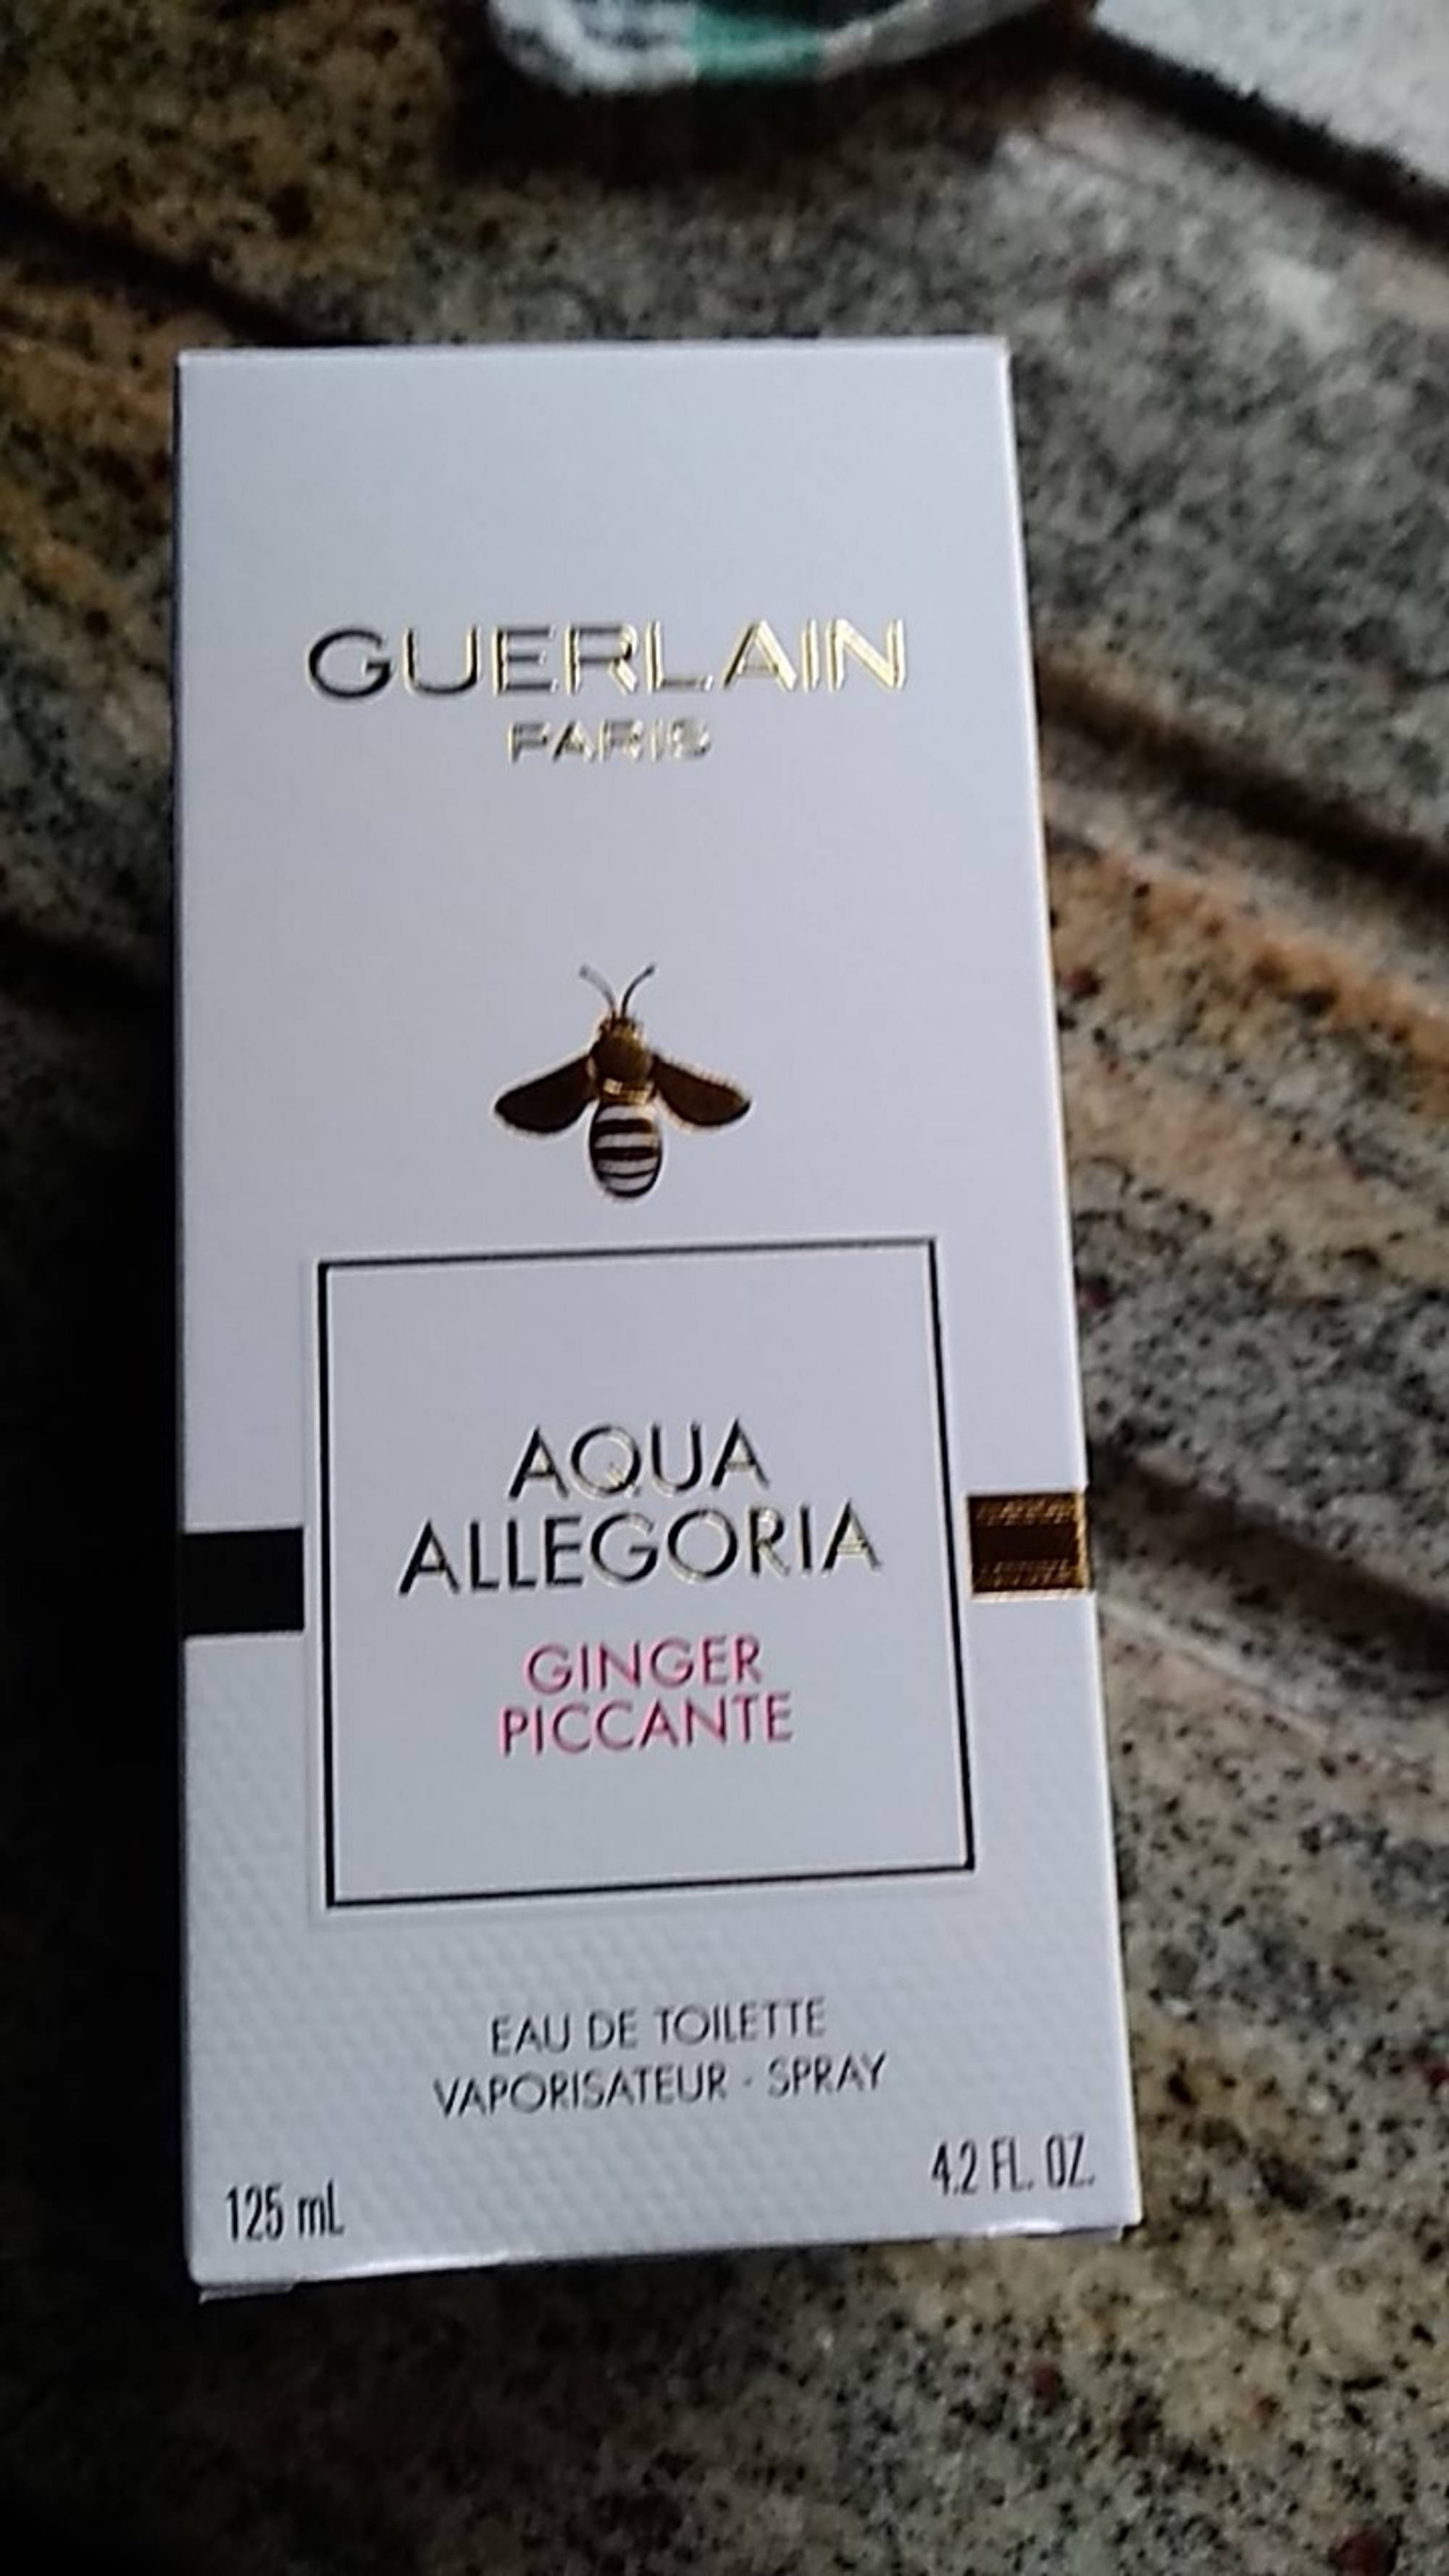 GUERLAIN - Aqua allegoria Ginger piccante - Eau de toilette